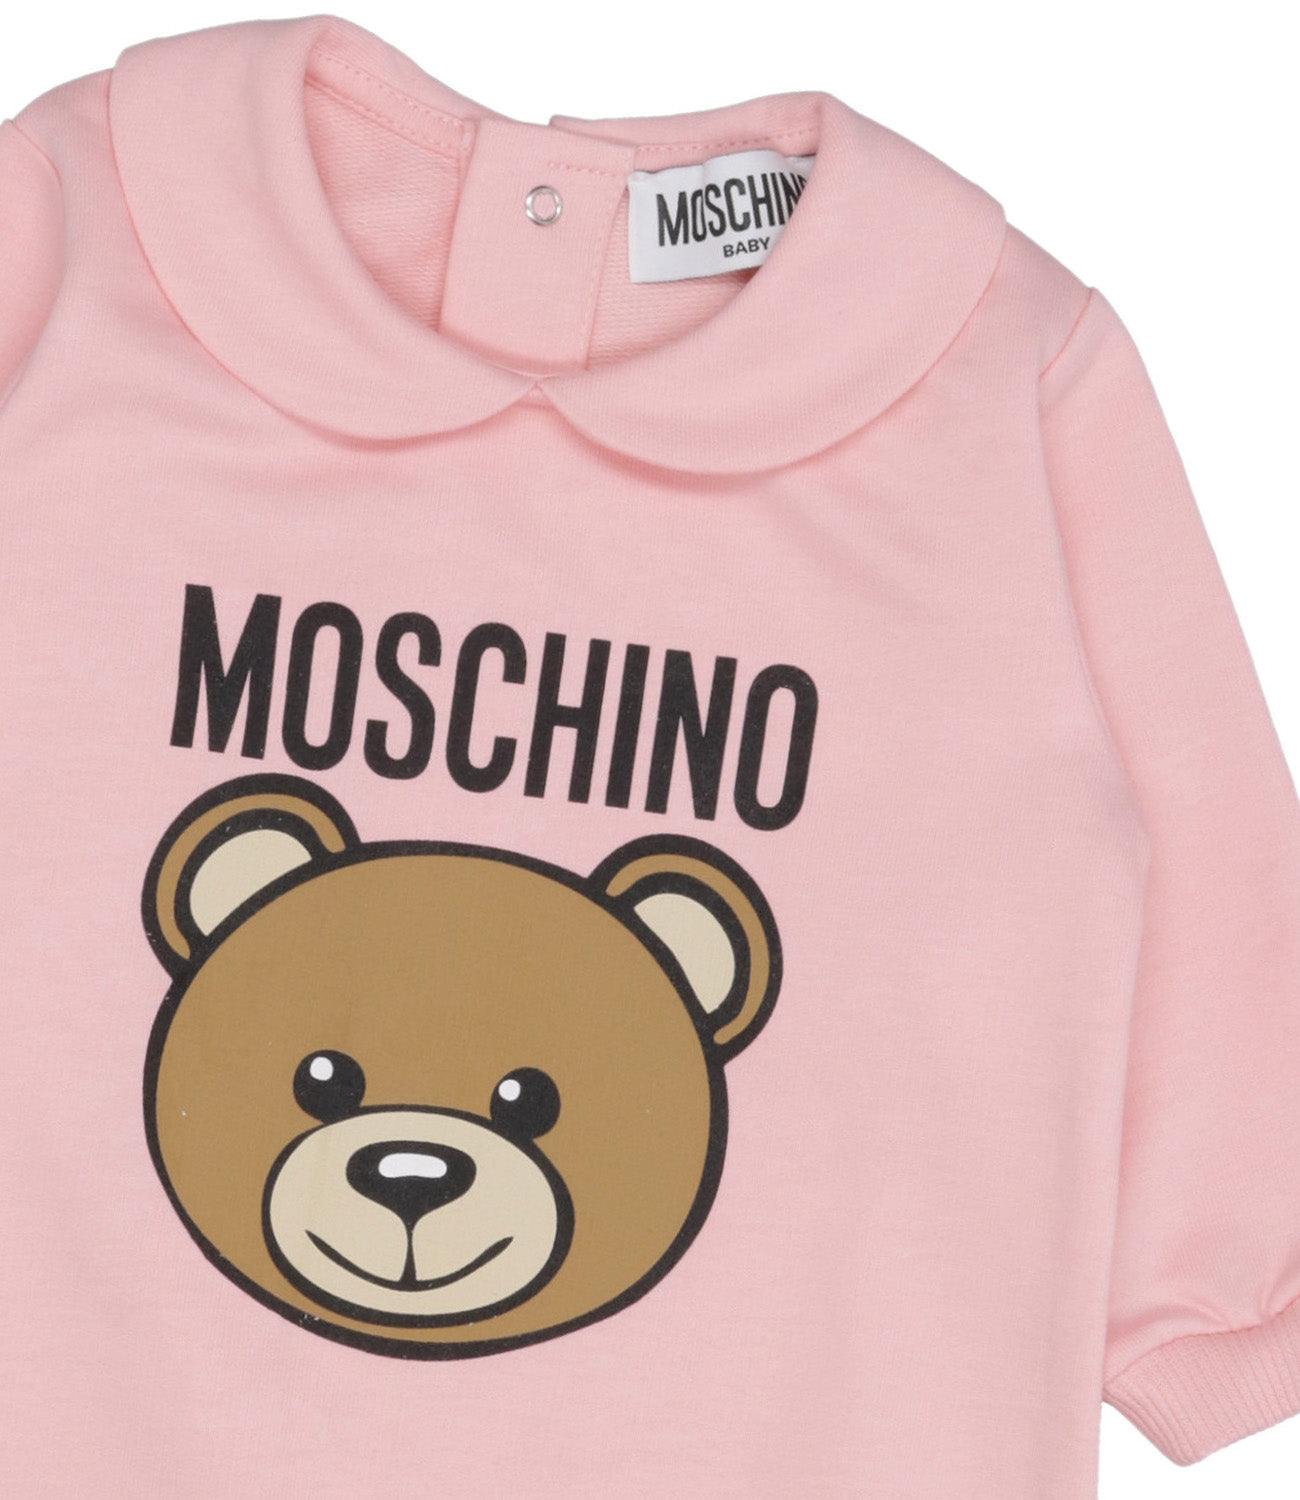 Moschino Baby | Pink Sleepsuit